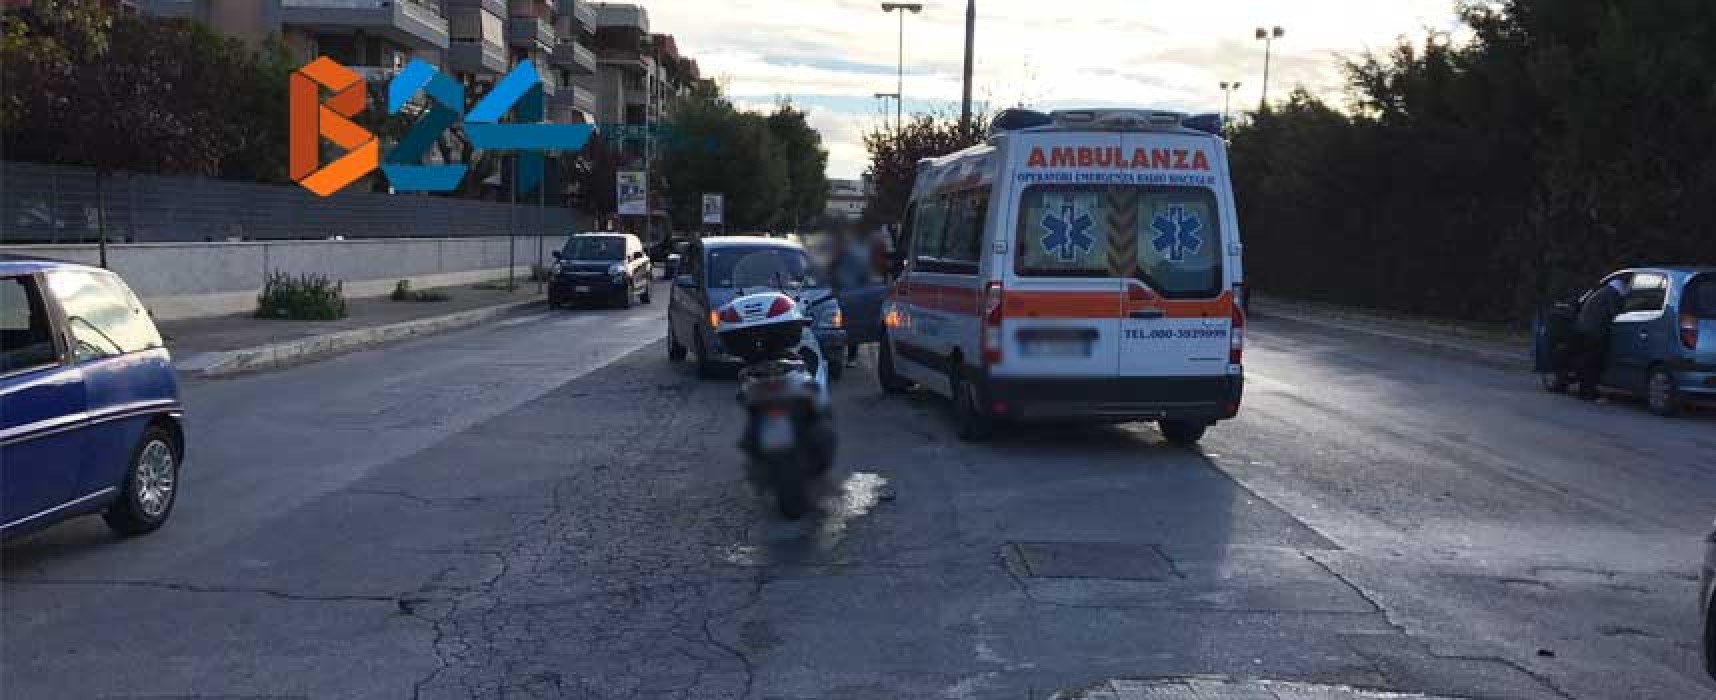 Incidente in via San Martino, motociclista al pronto soccorso / FOTO